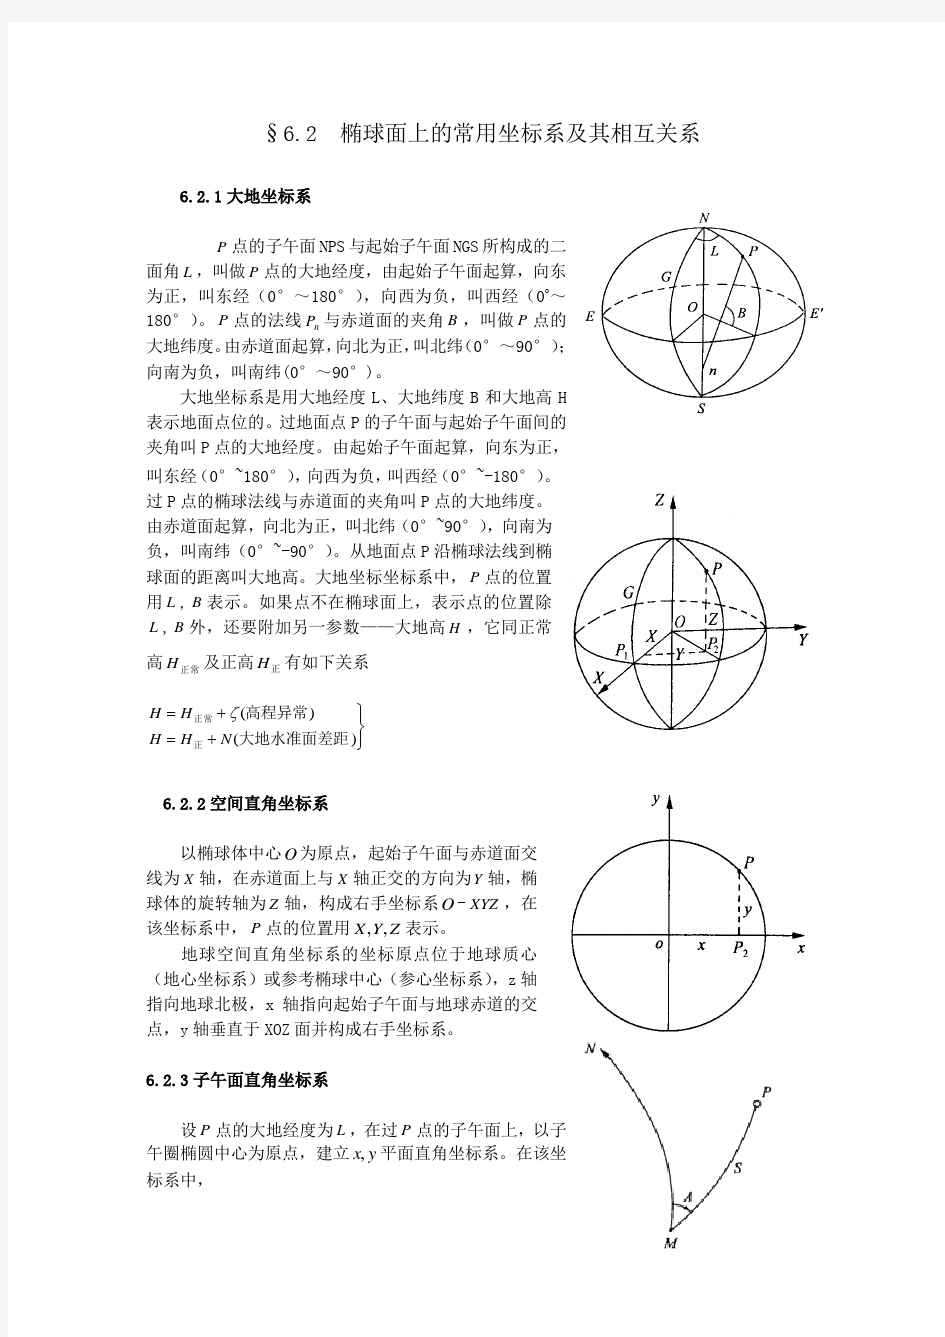 椭球面上的常用坐标系及其相互关系